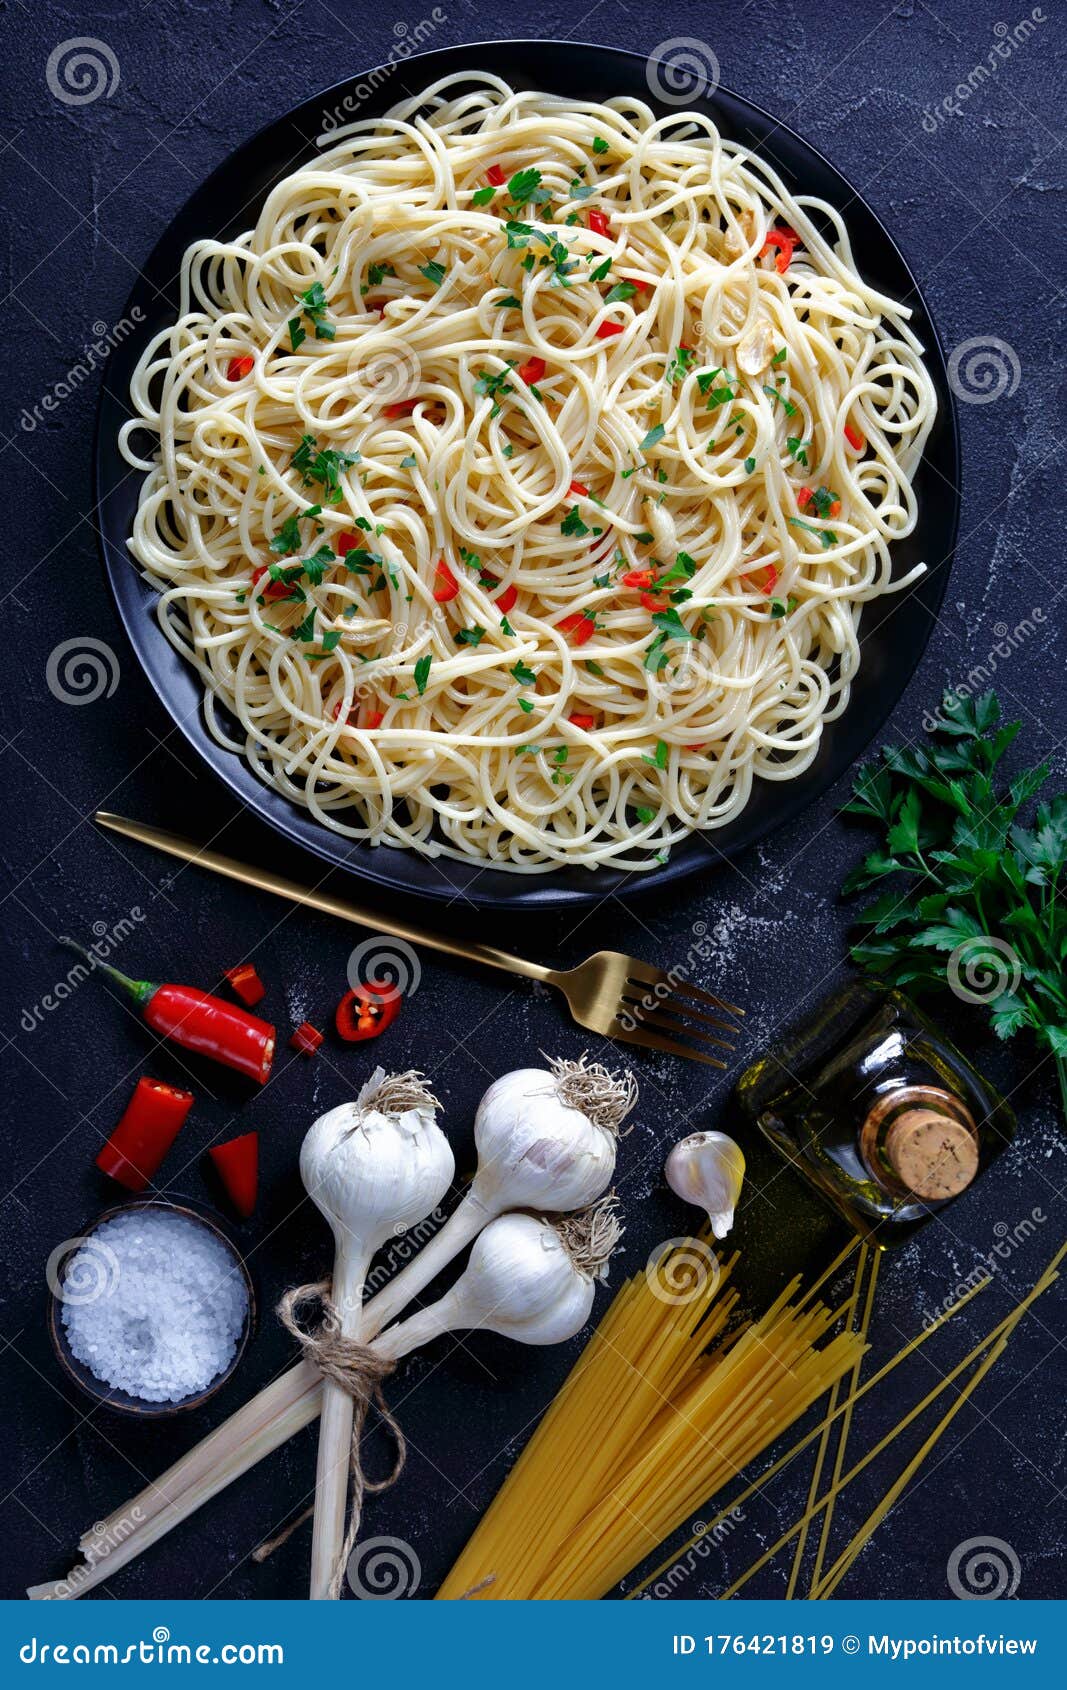 pasta aglio, olio e peperoncino on a plate